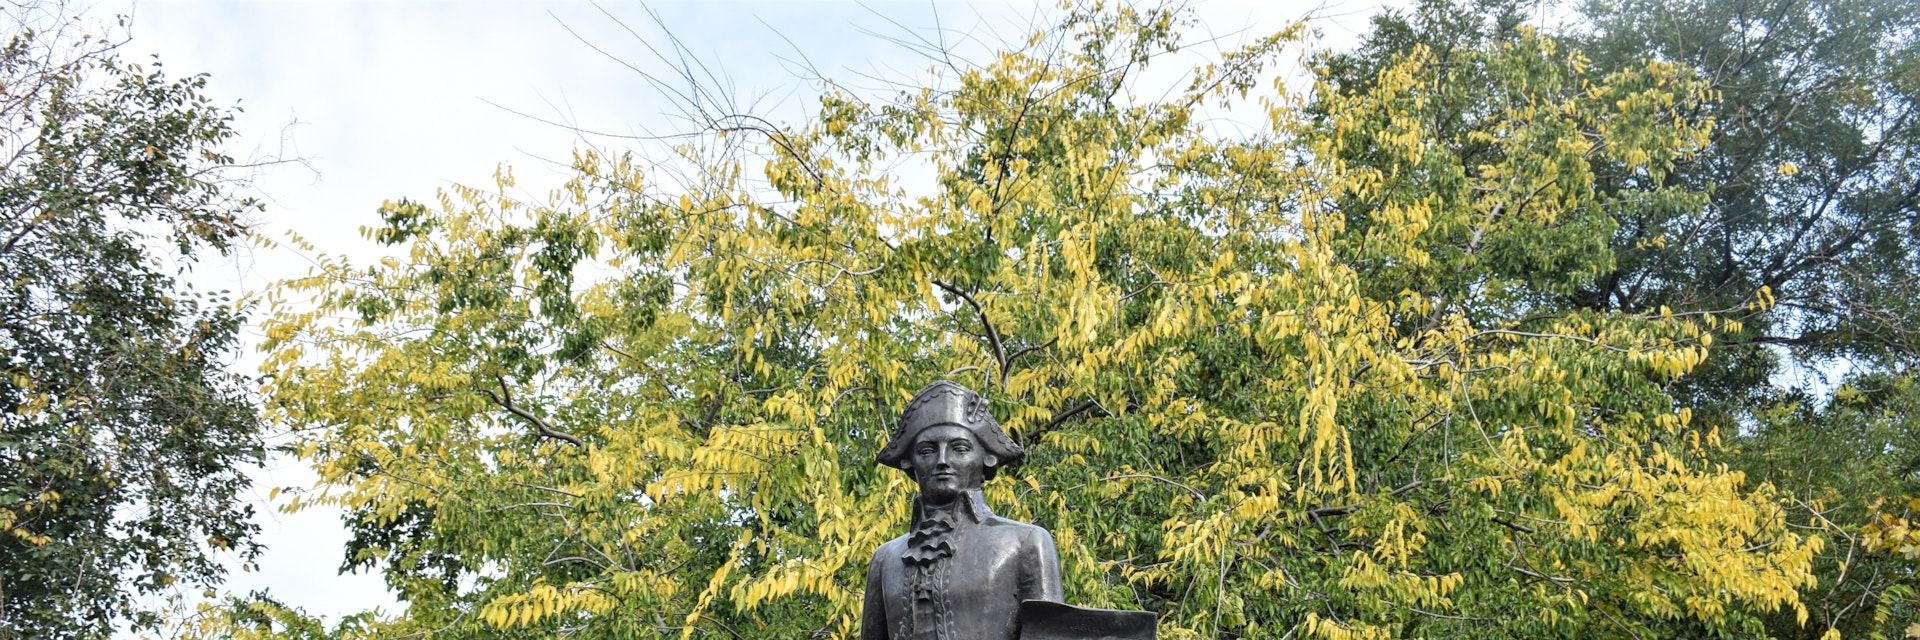 The statue of José de Ribas, who built Odesa's harbour